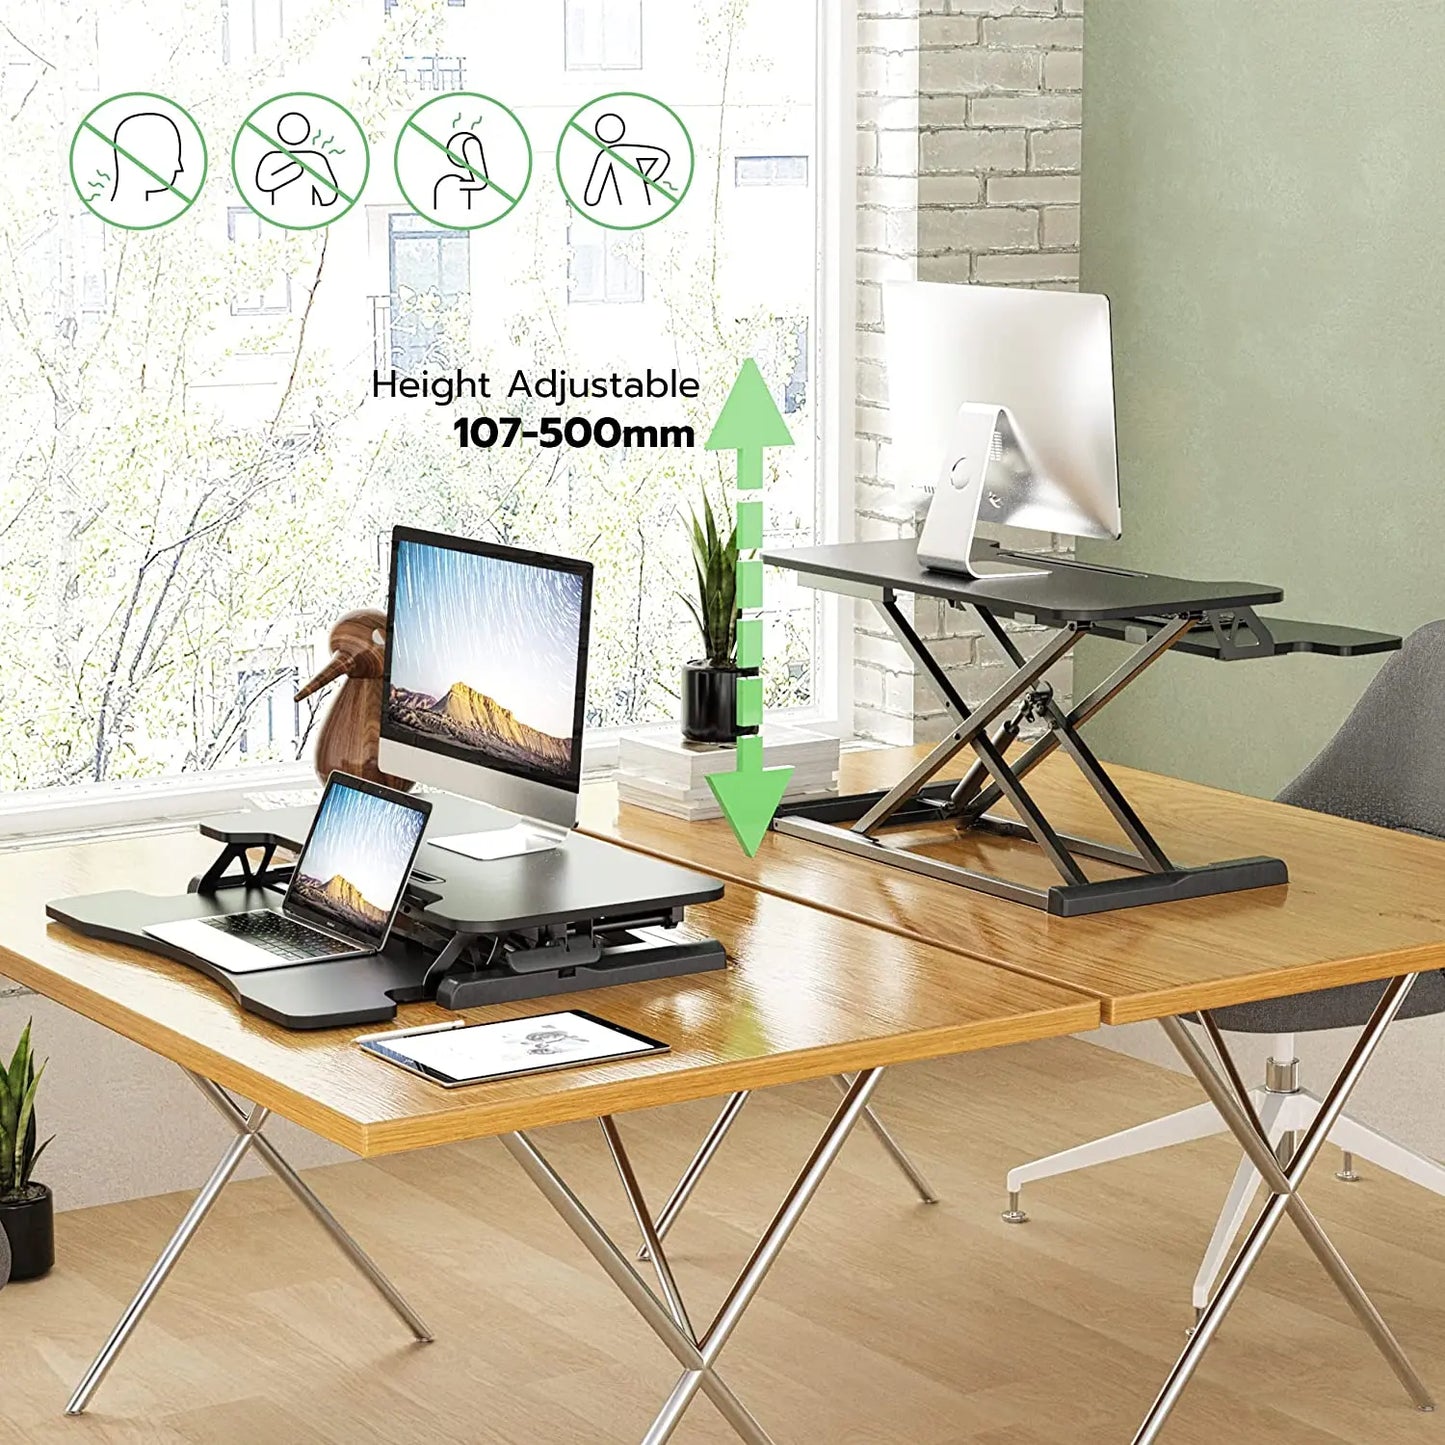 HumanTeck Sitz-Steh-Arbeitsplatz Schreibtisch, Steharbeitsplatz Stehpult Standtisch, Höhenverstellbar Stehpult mit Tastaturablage Geeignet für Zwei Monitore oder Laptops,15 kg Kapazitä(Schwarz) PUTORSEN